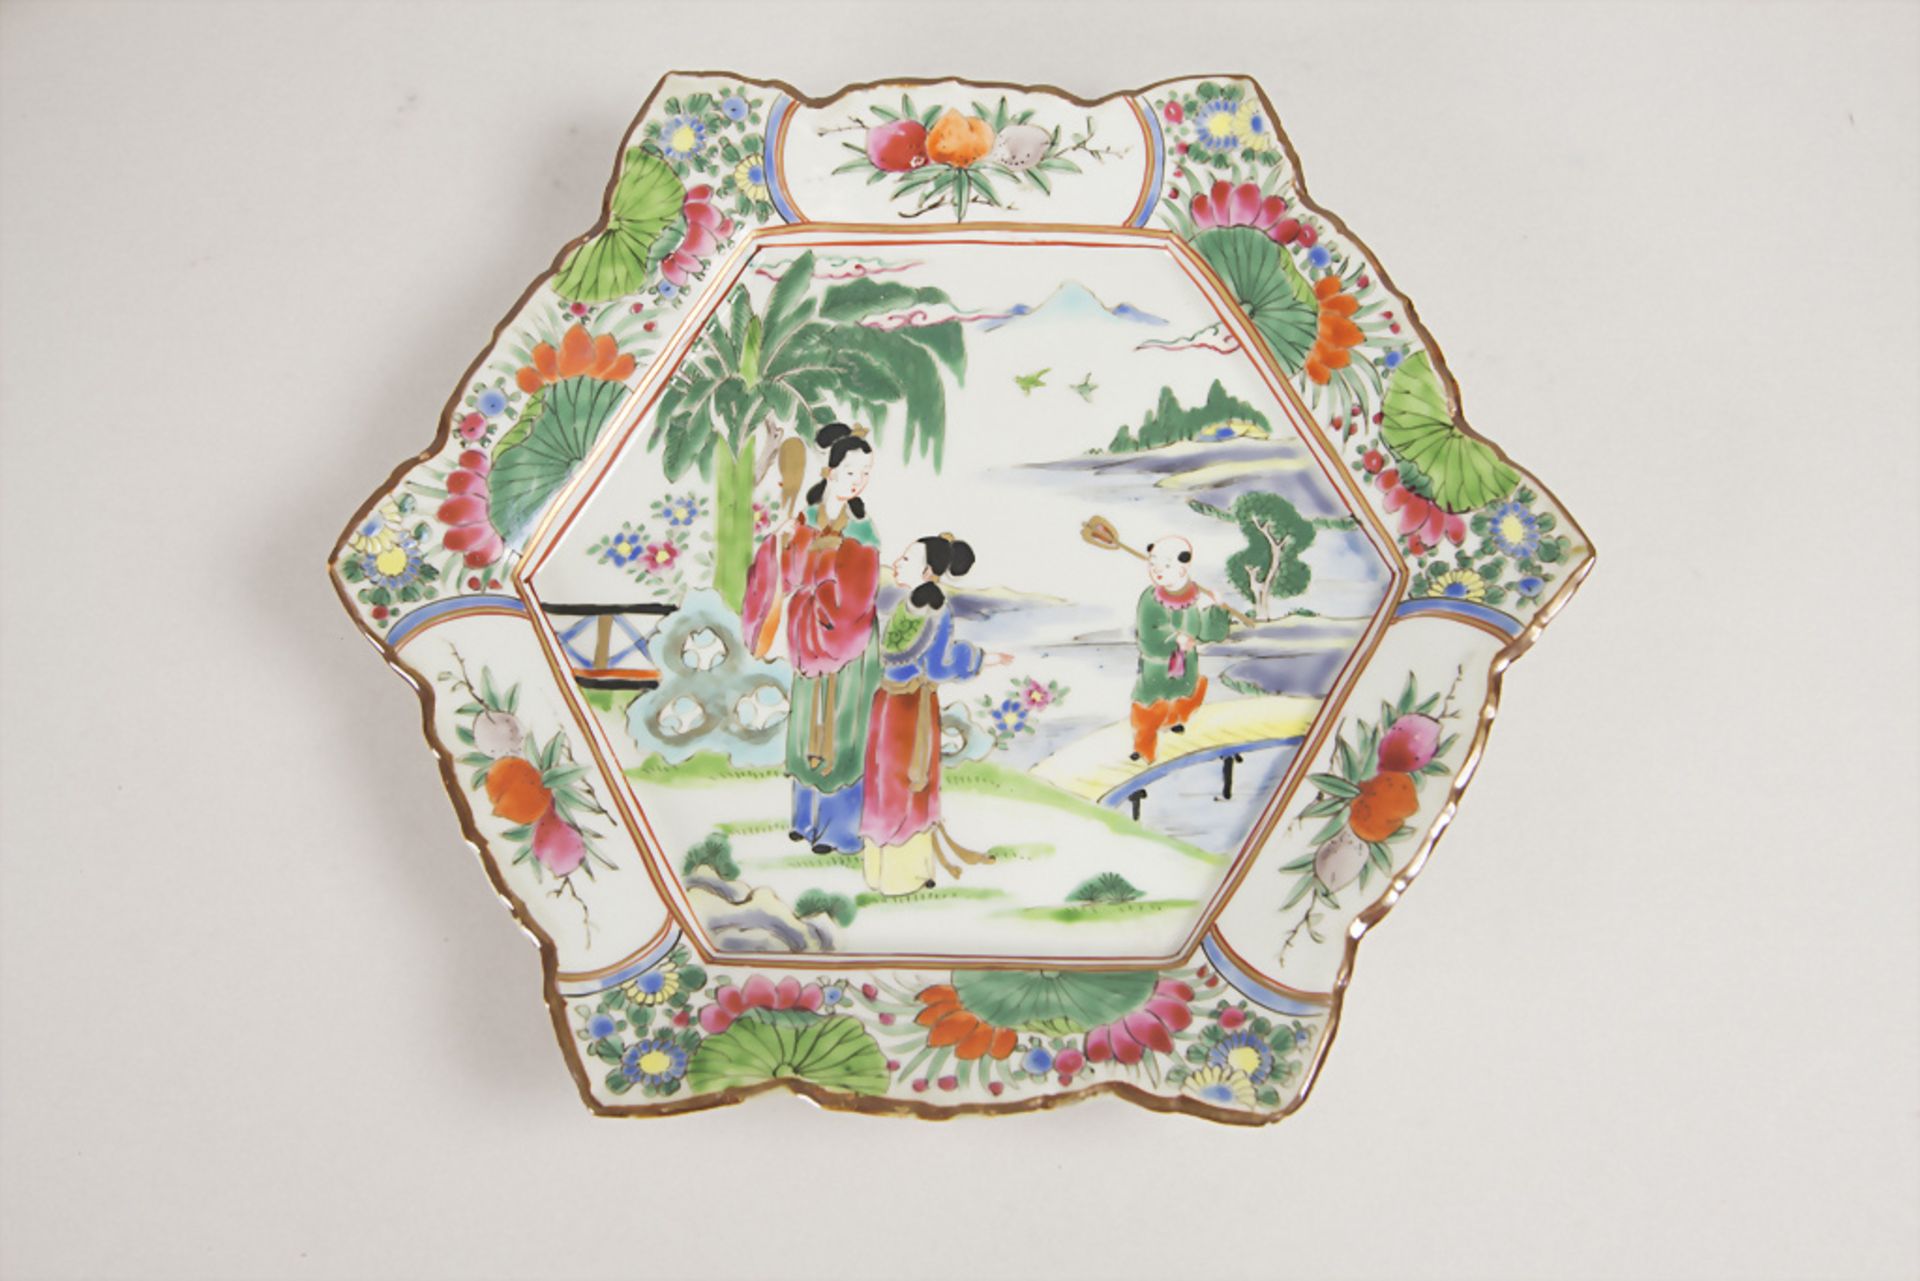 Zierteller / A decorative plate, China oder Japan, 19. Jh.